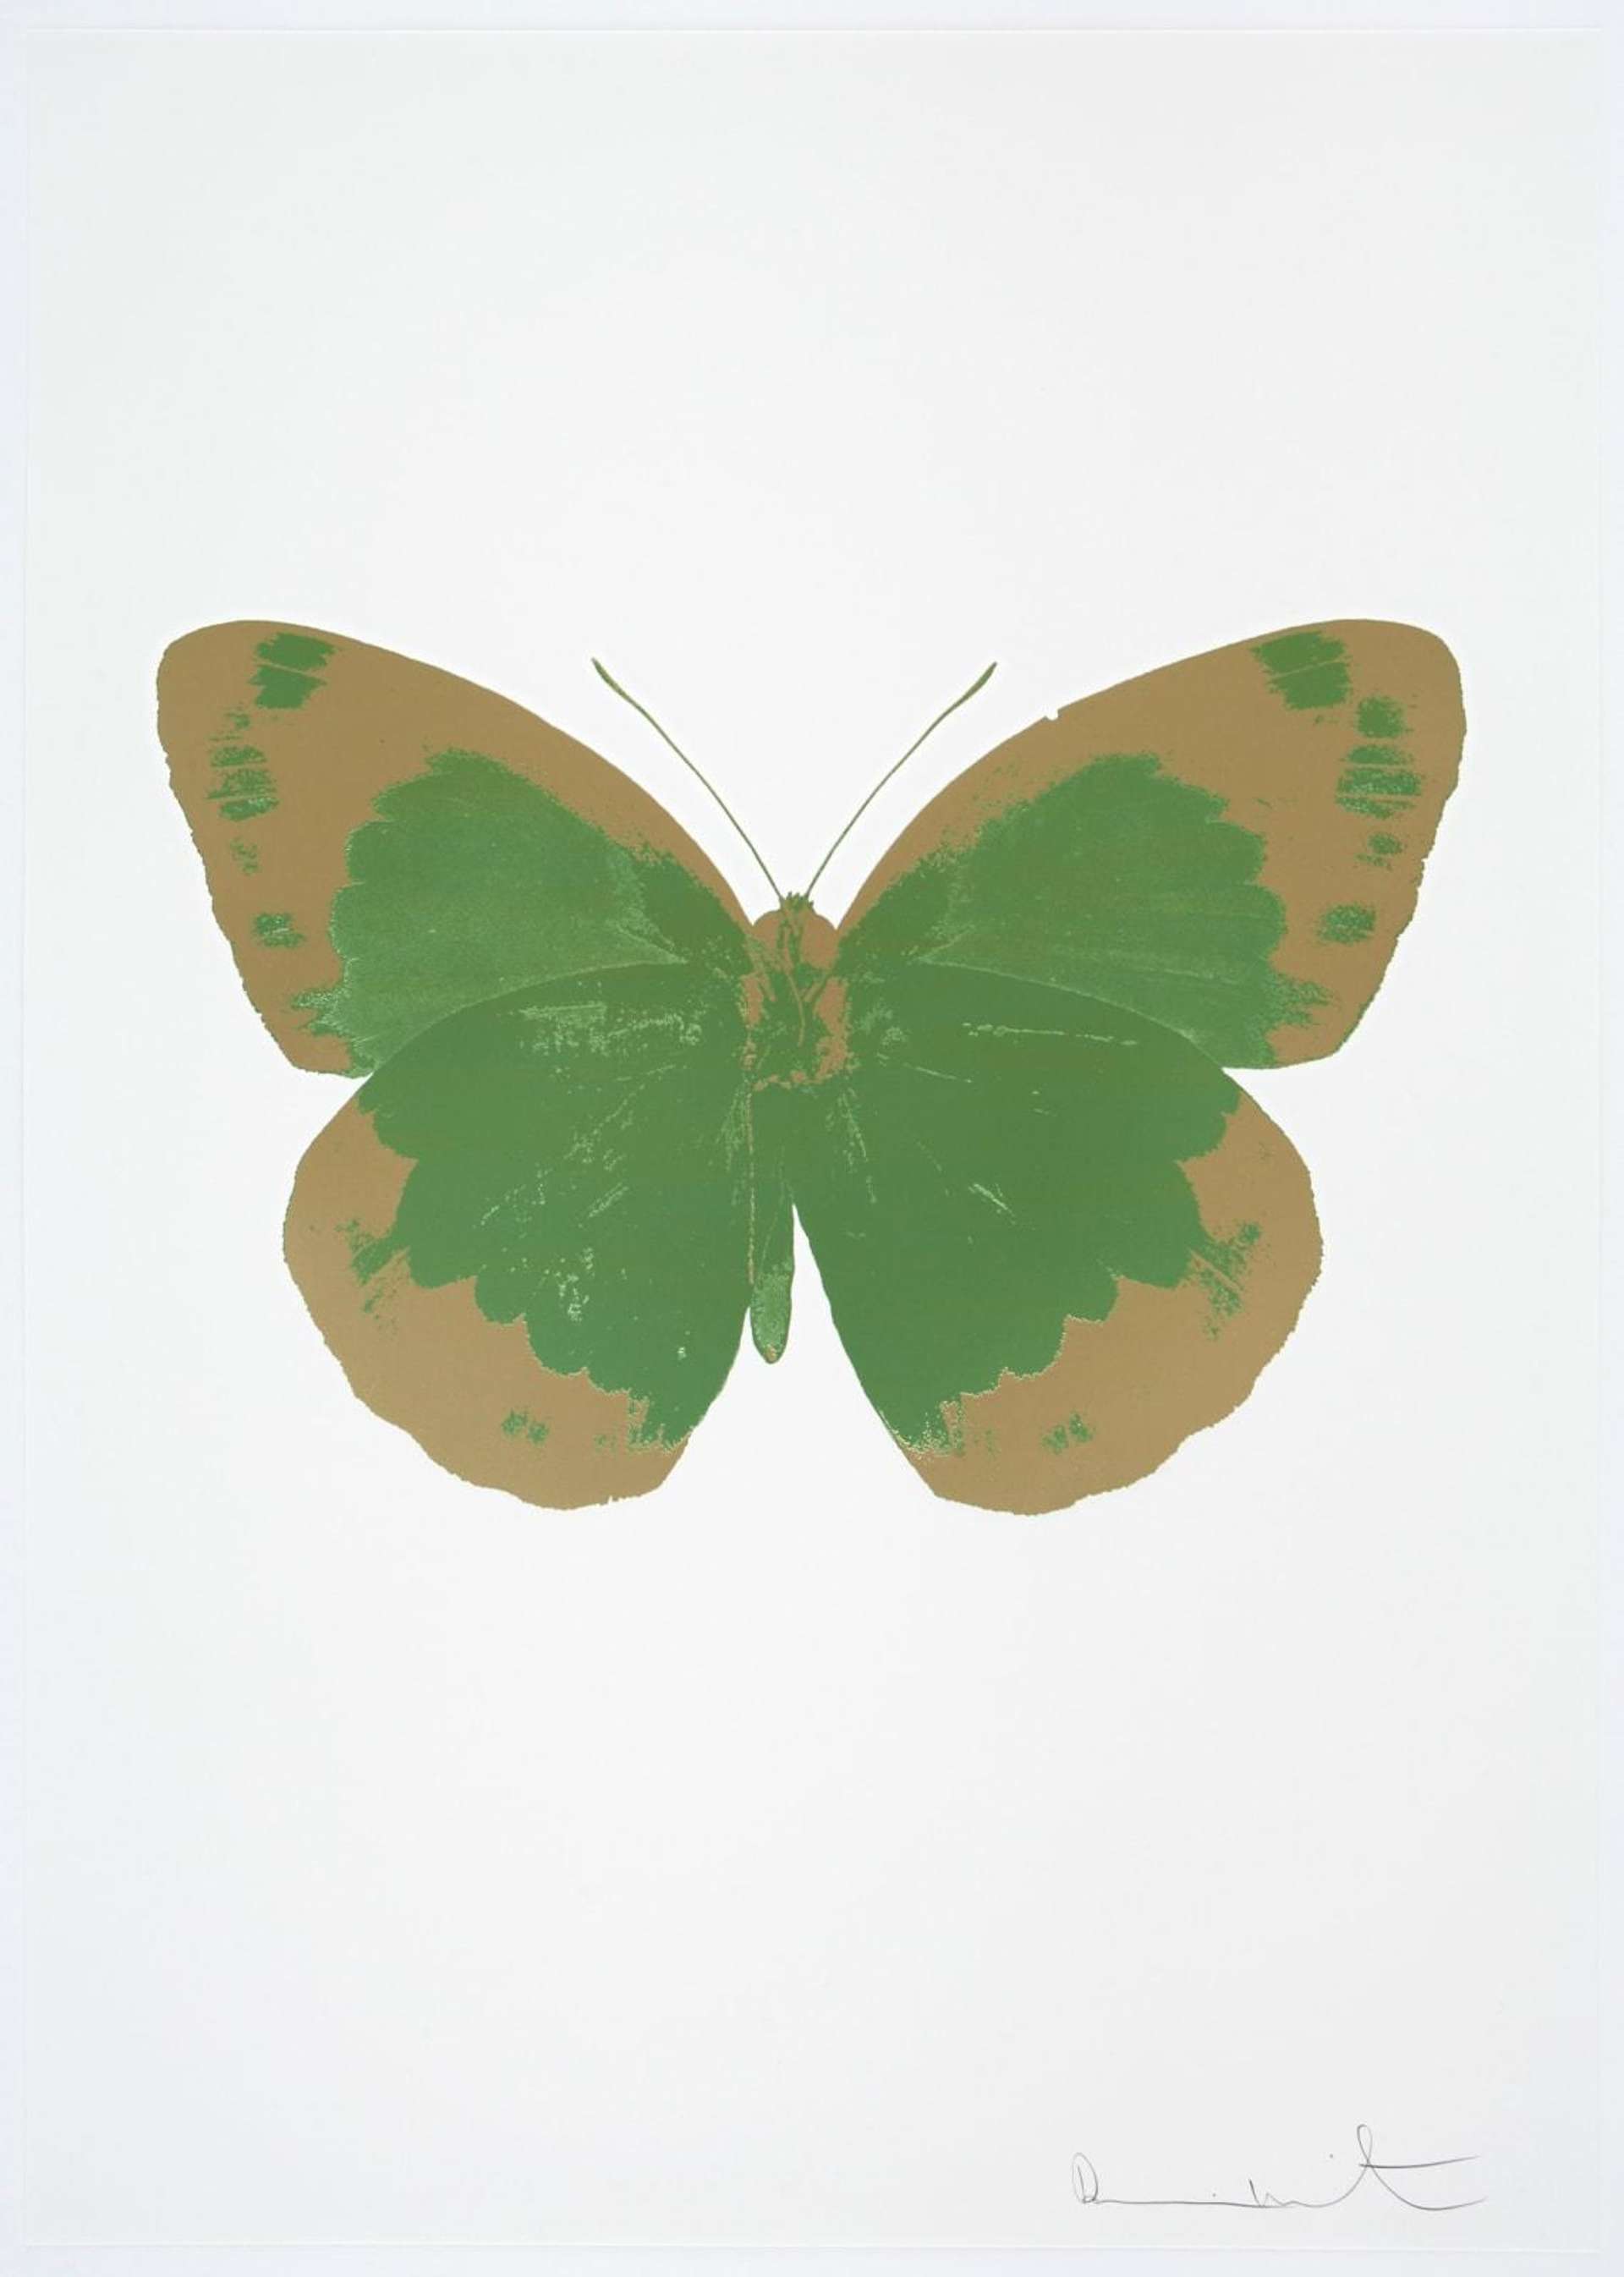 The Souls II (leaf green, cool gold, blind impression) - Signed Print by Damien Hirst 2010 - MyArtBroker